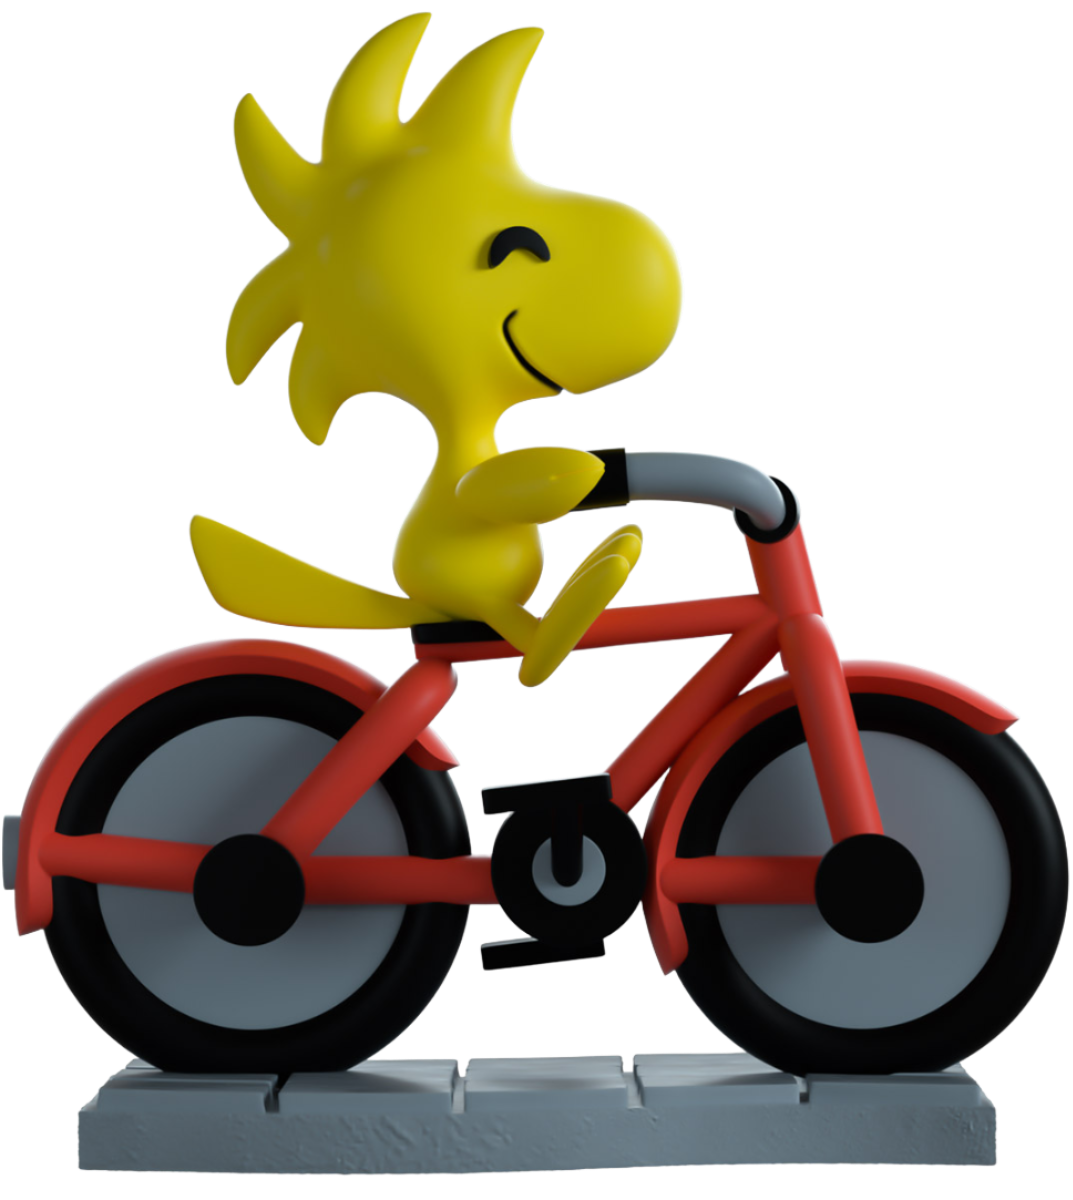 Youtooz - Peanuts - Woodstock On A Bike Vinyl Figure #17